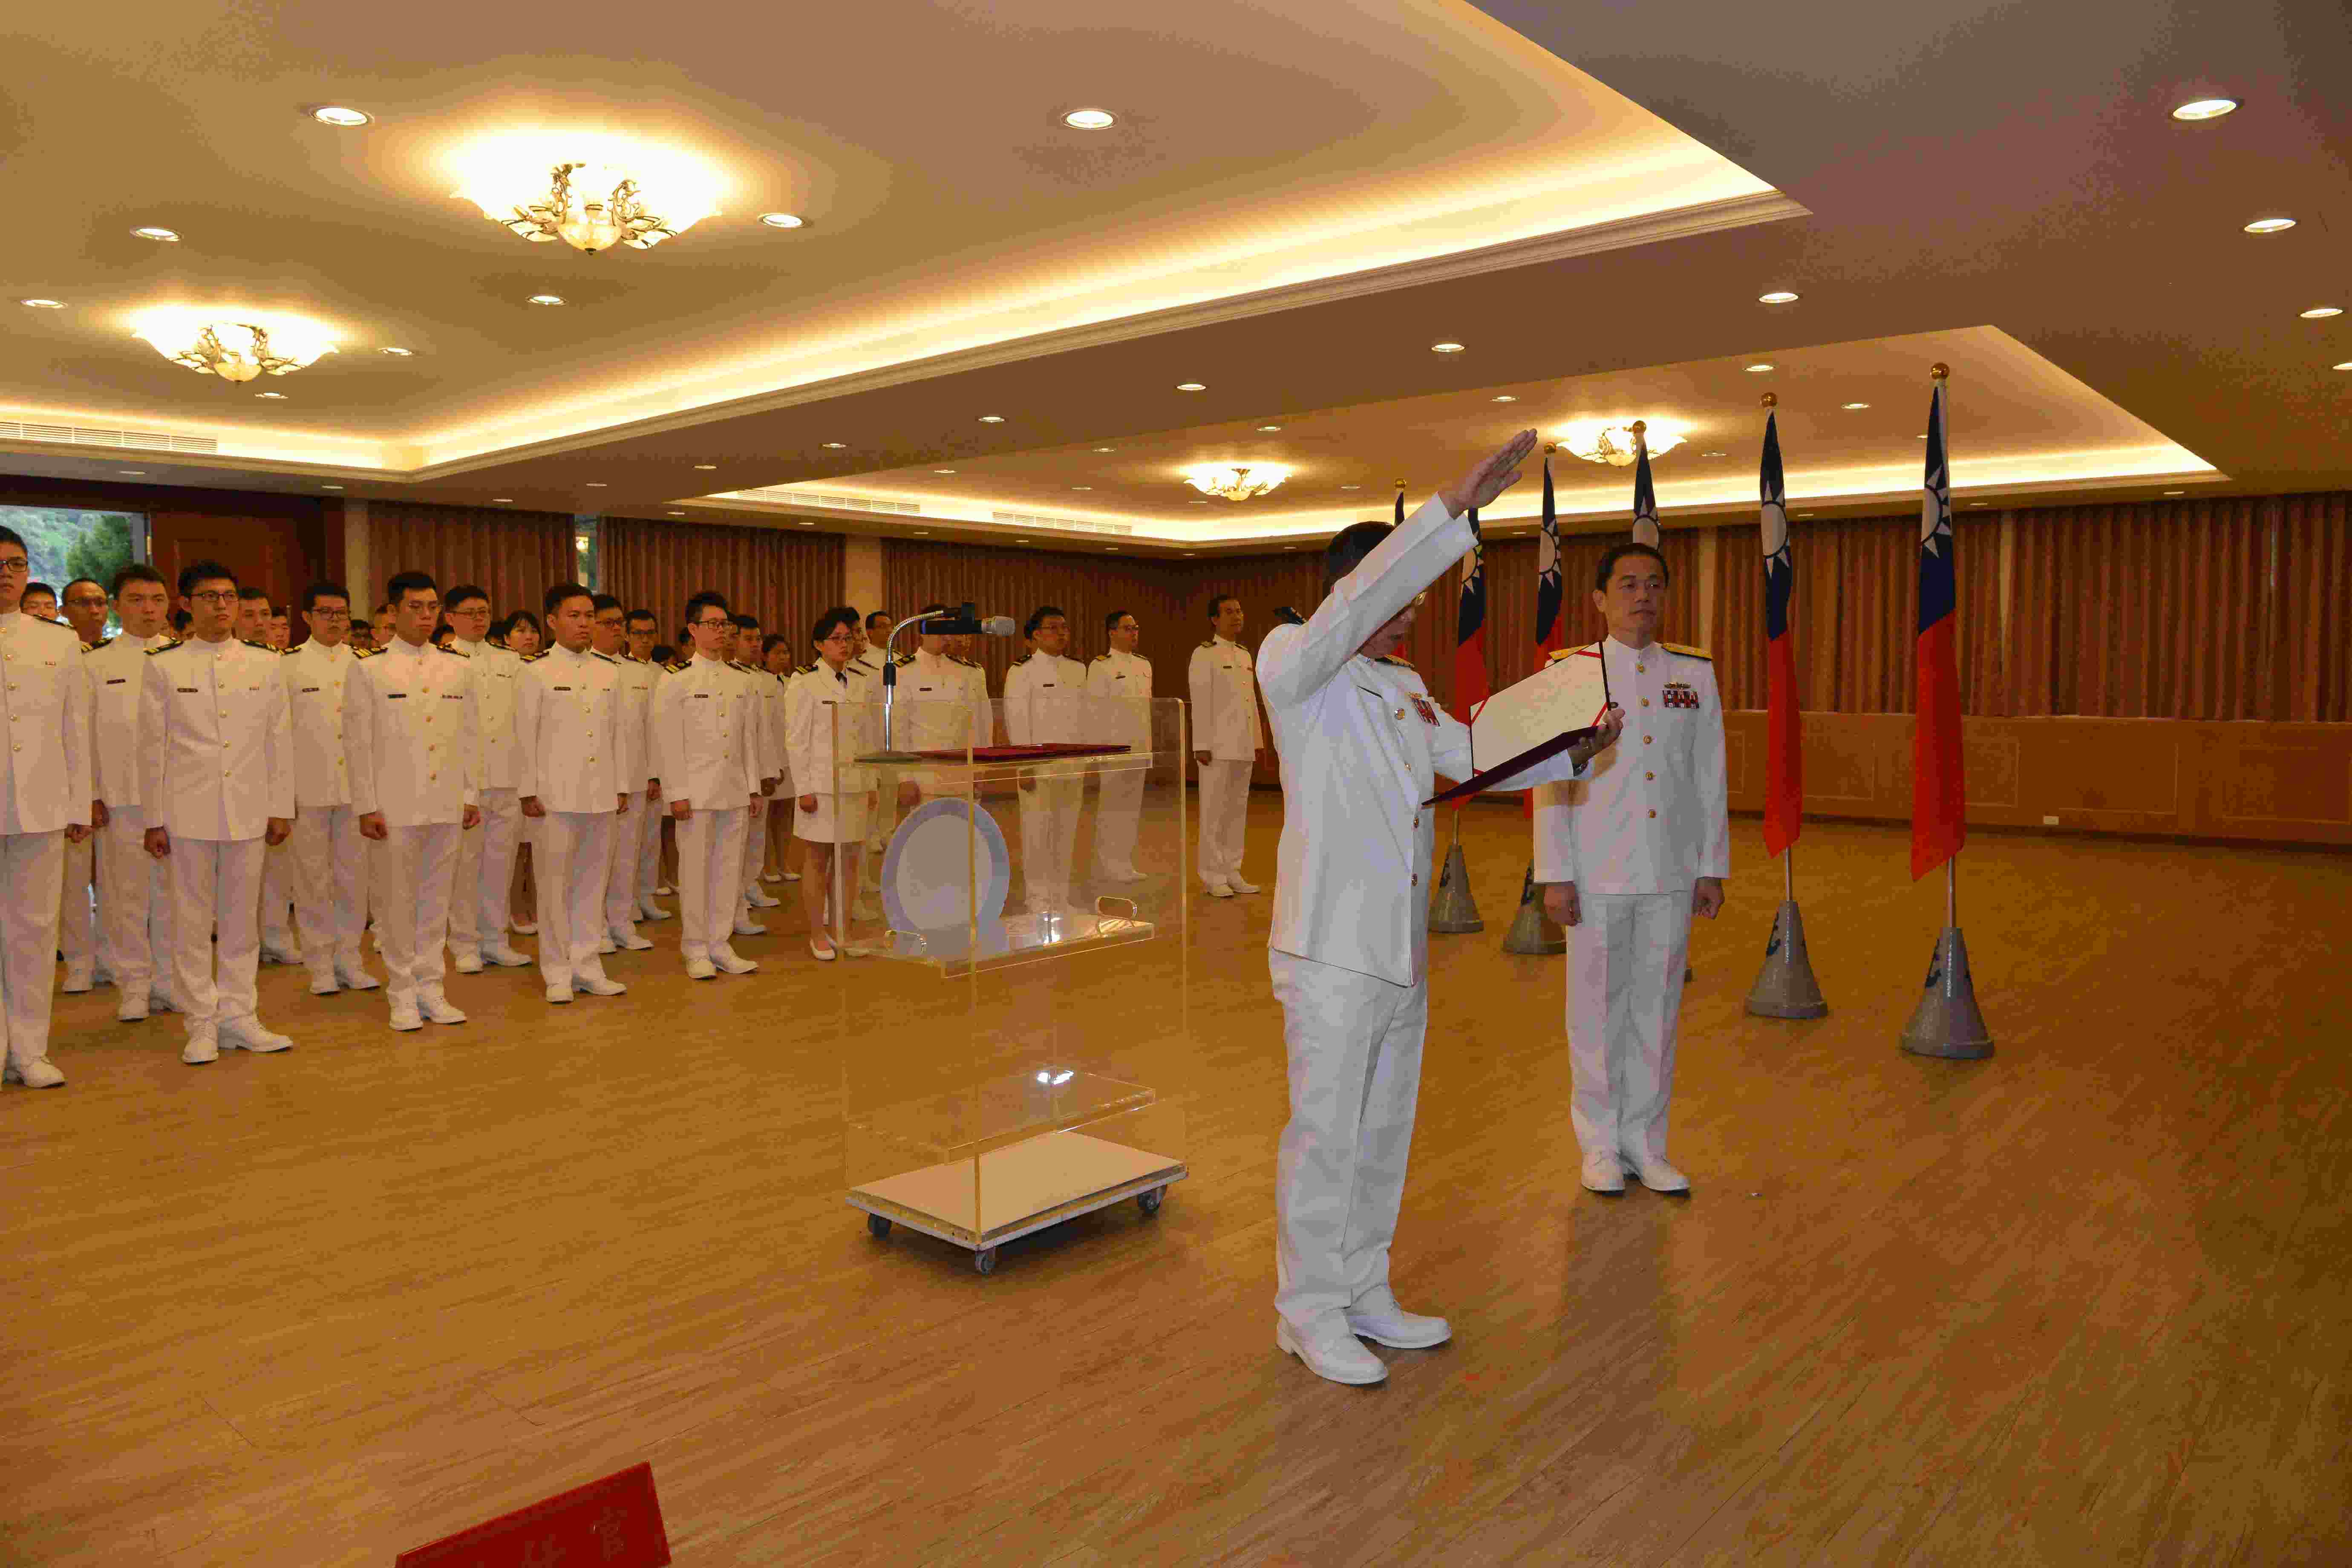 2019-09-24海軍通信系統指揮部日前實施新任指揮官佈達典禮